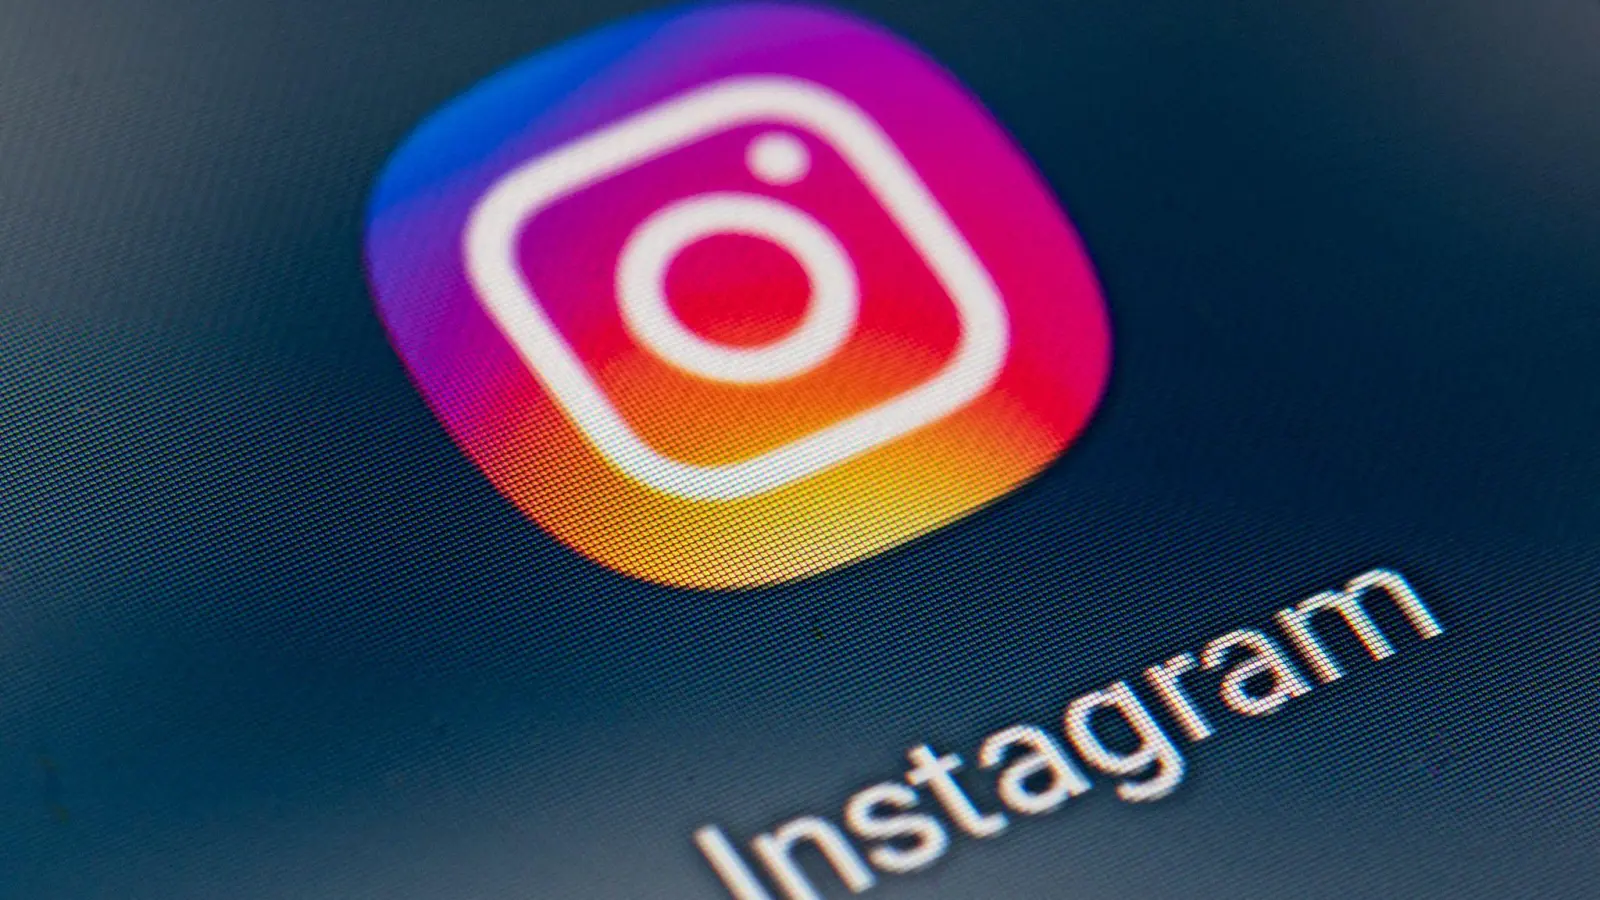 Wegen schwerer Verstöße gegen Datenschutzregeln für Kinder muss das soziale Netzwerk Instagram in Irland 405 Millionen Euro Strafe zahlen. (Foto: Fabian Sommer/dpa)